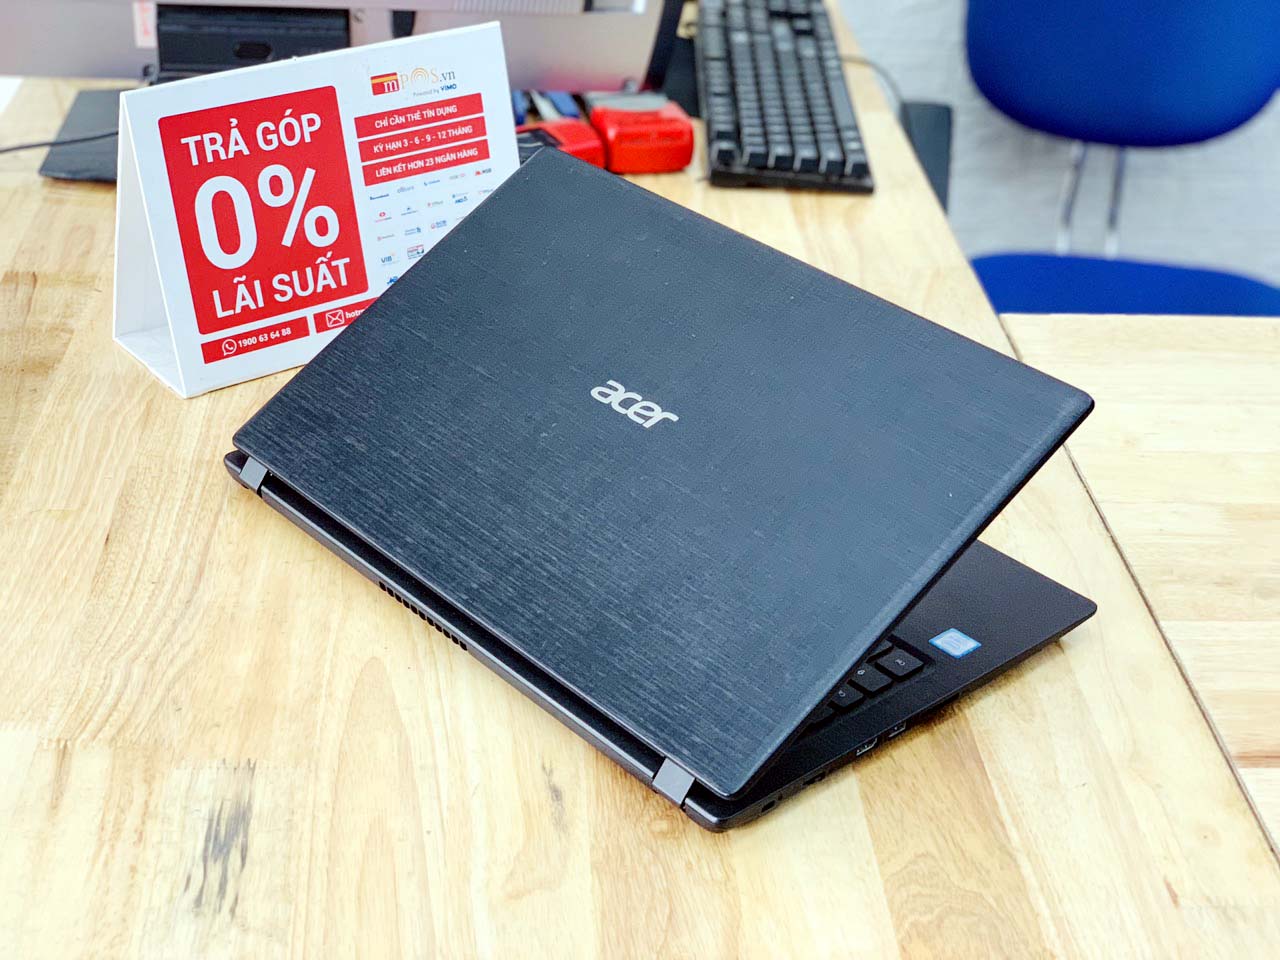 Laptop Acer Aspire A315 i5-7200U Ram 4GB HDD 500GB 15.6 inch Mỏng Nhẹ Đẹp